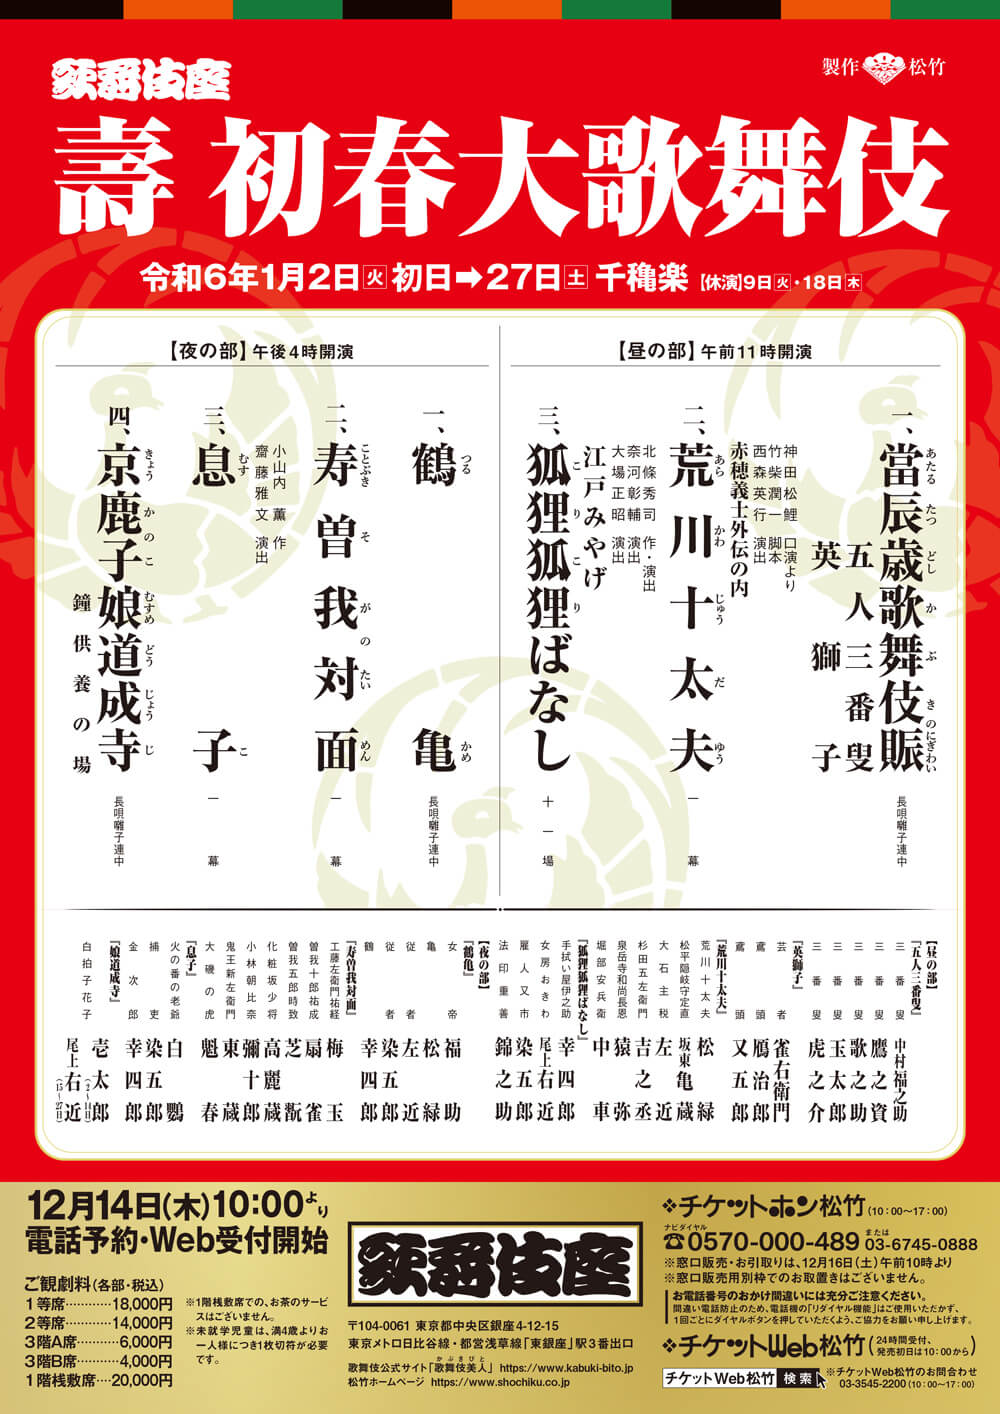 January Program at the Kabukiza Theatre